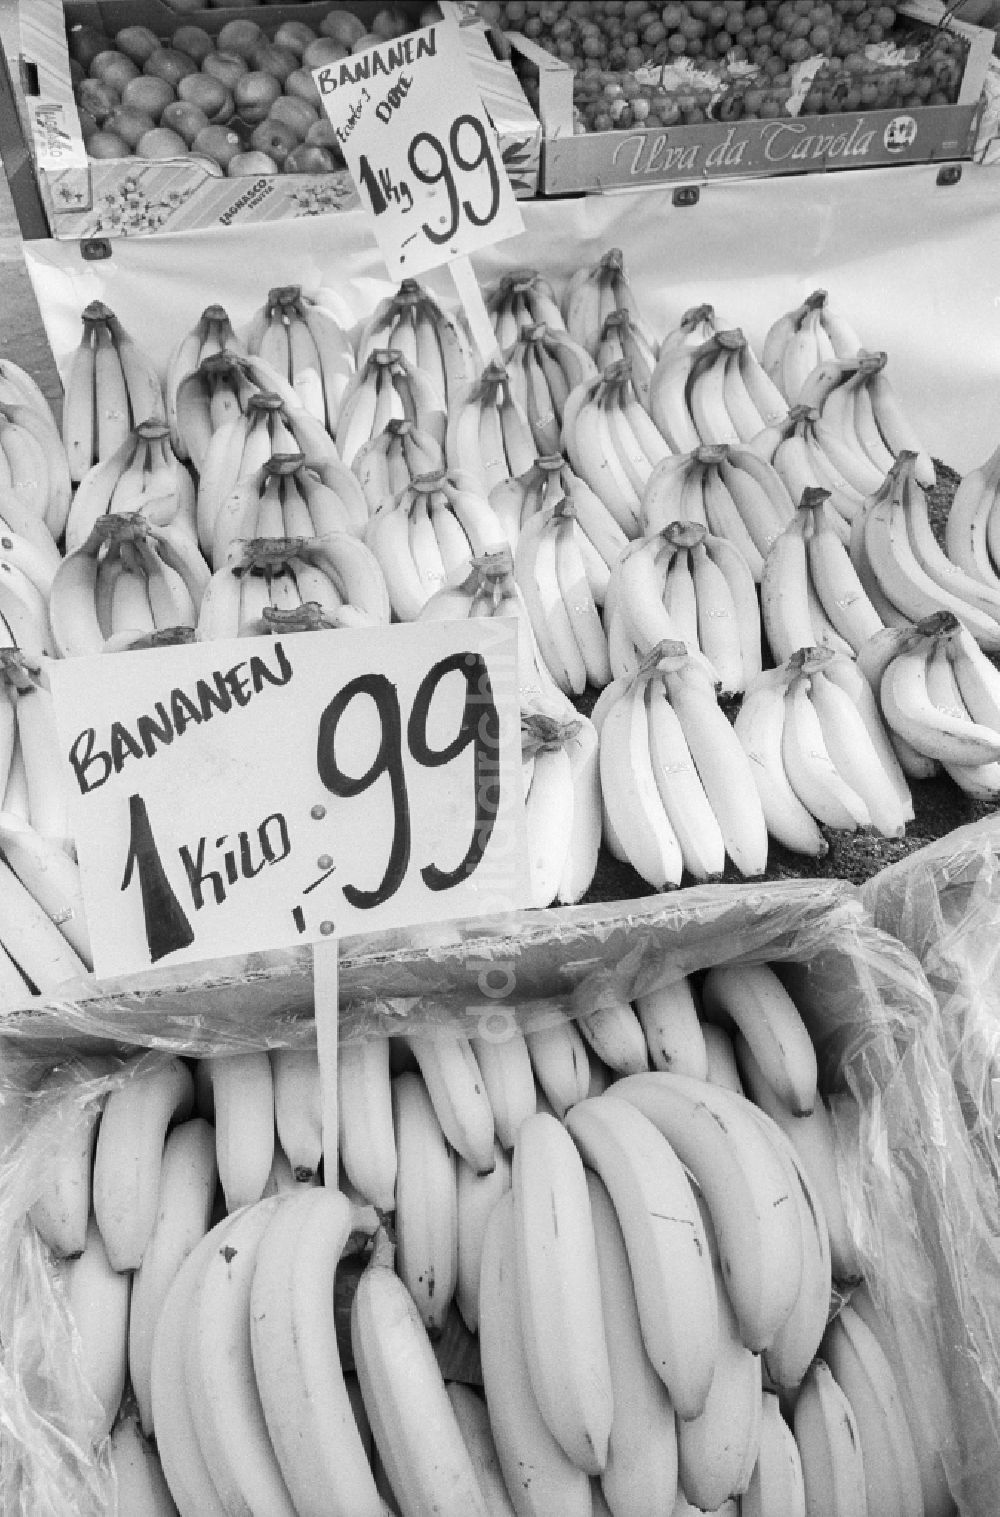 DDR-Fotoarchiv: Berlin - Verkauf von Bananen an einem Marktstand